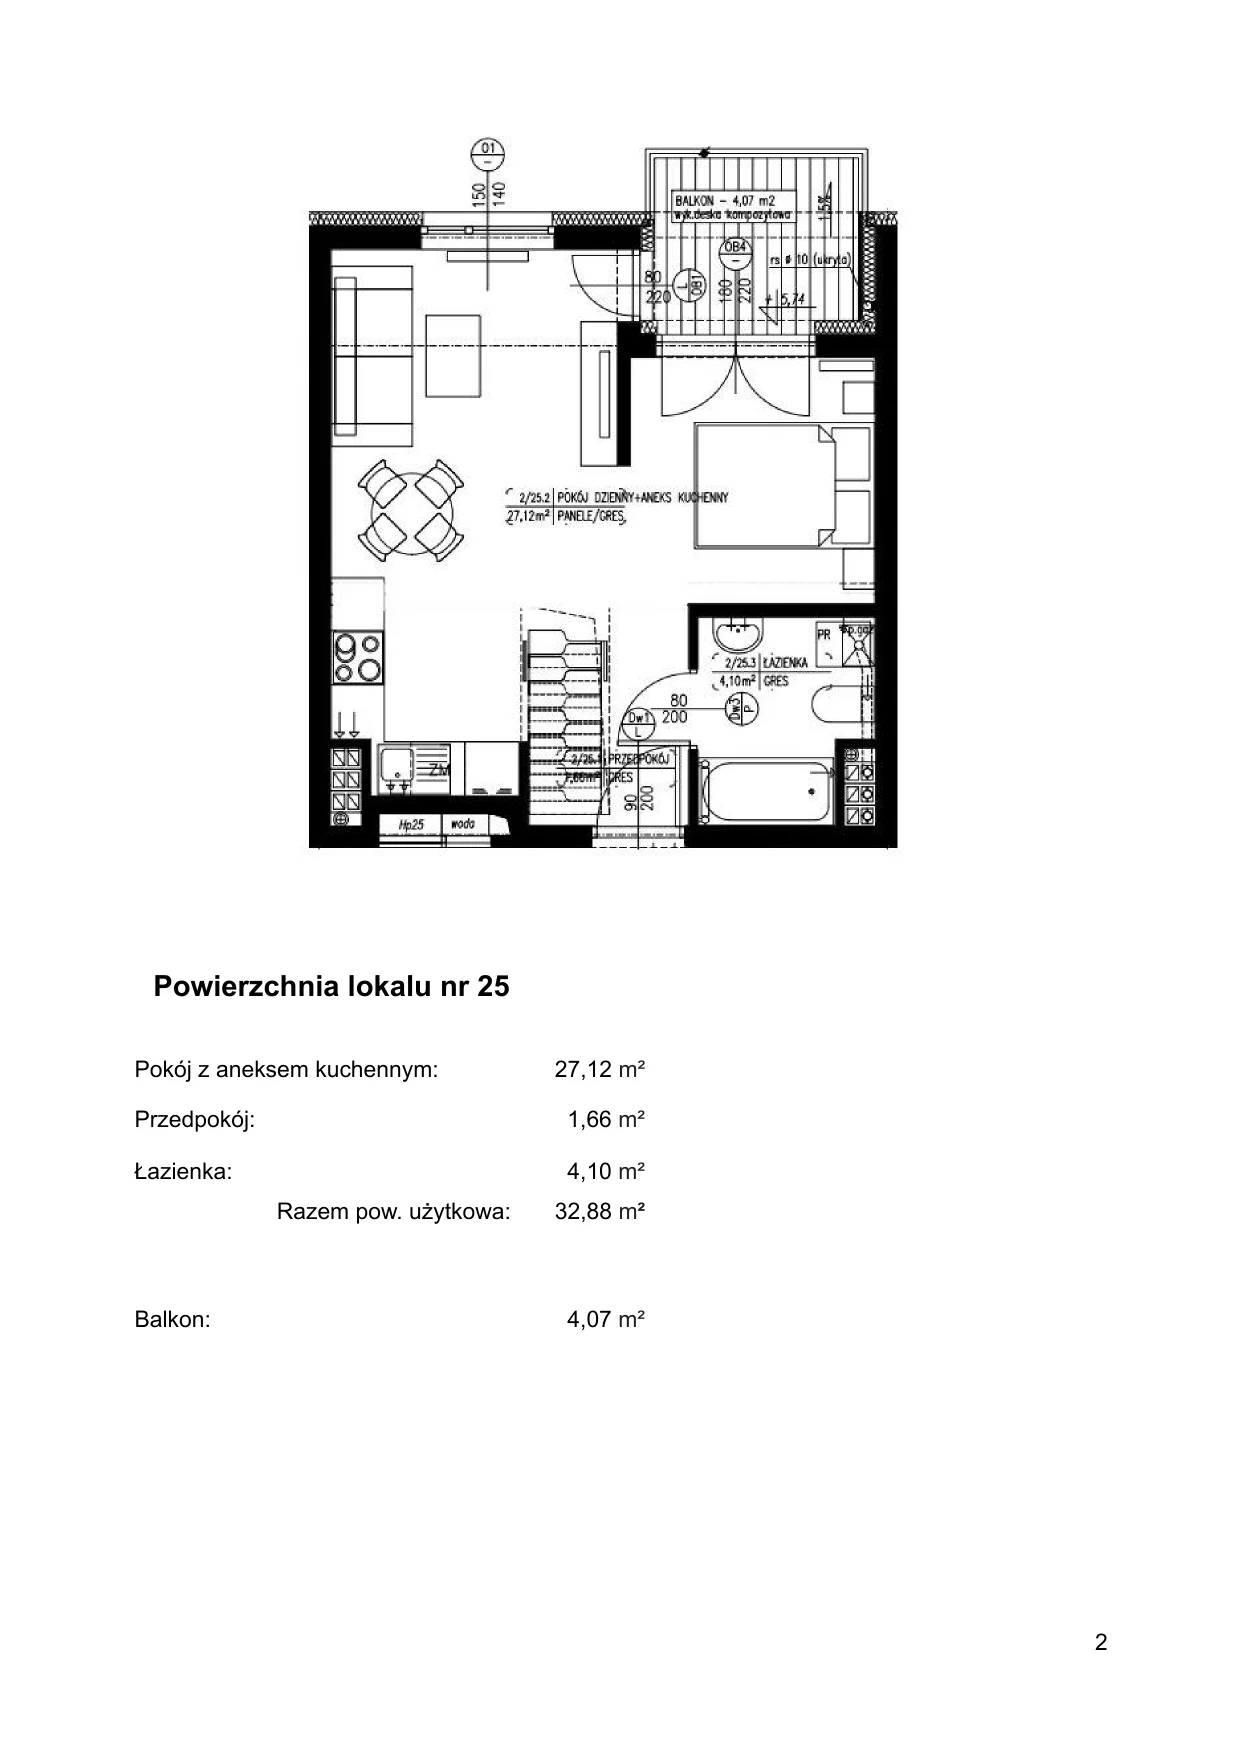 Apartament 45,41 m², piętro 2, oferta nr 25, Klimaty Bałtyku, Dziwnów, ul. Daglezji 93-94